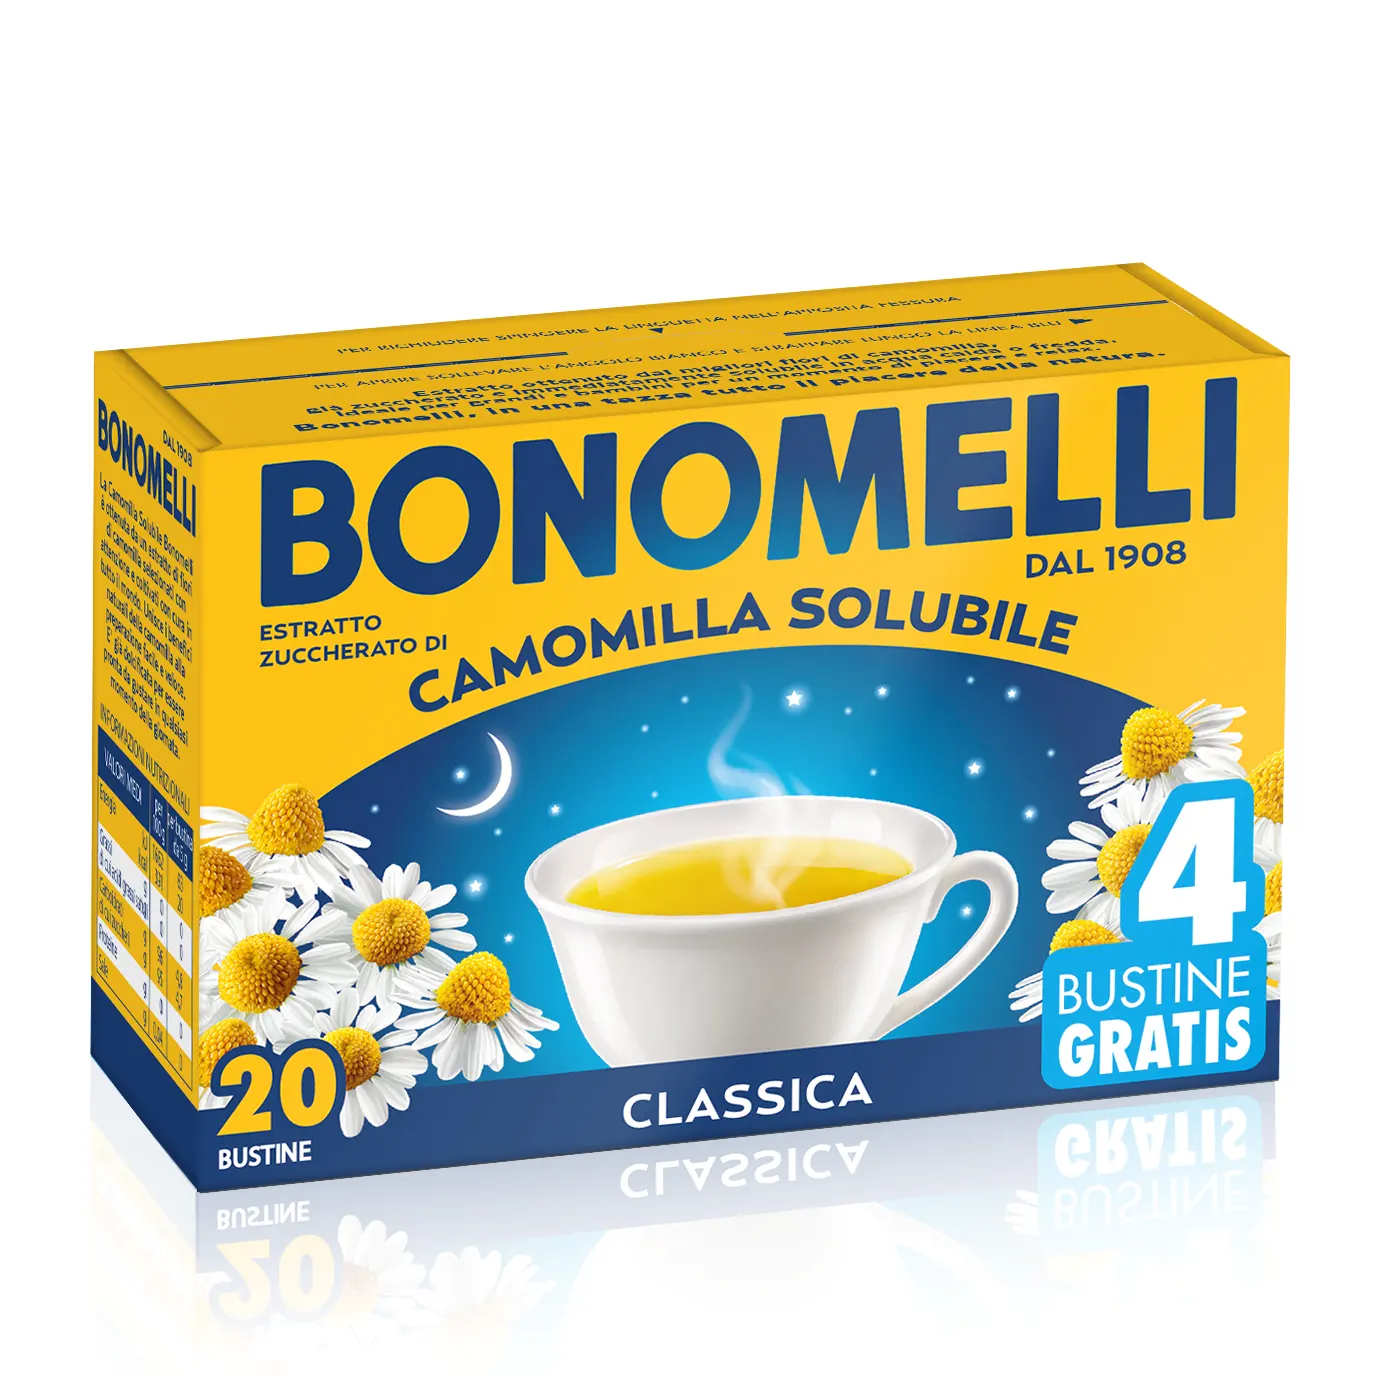 उच्चतम गुणवत्ता इतालवी प्रमाणित हर्बल चाय तत्काल कैमोमाइल चाय Bonomelli में 16 + 4 पाउच चाय बॉक्स के लिए आराम और नींद